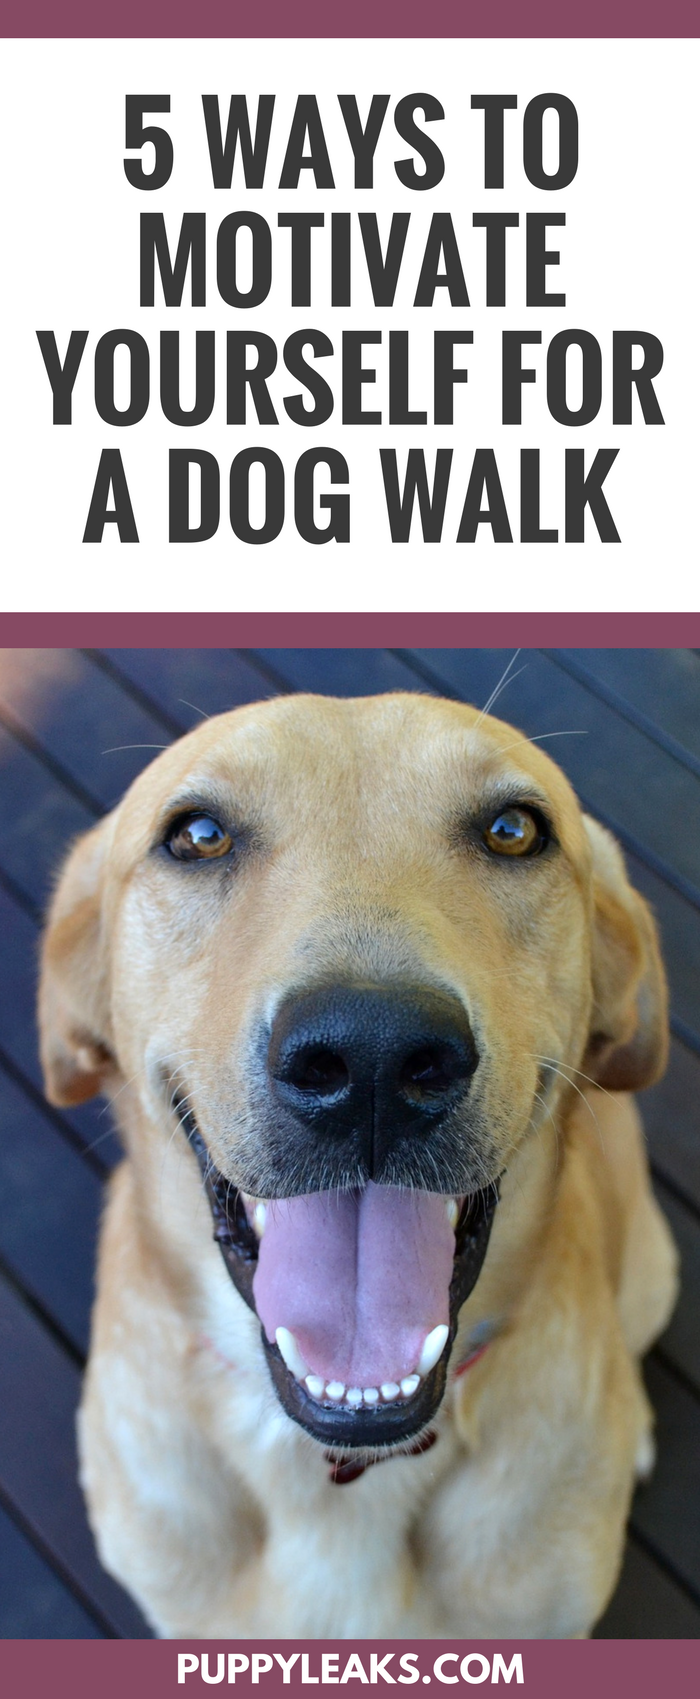 5 modi per motivarti a fare una passeggiata con il cane